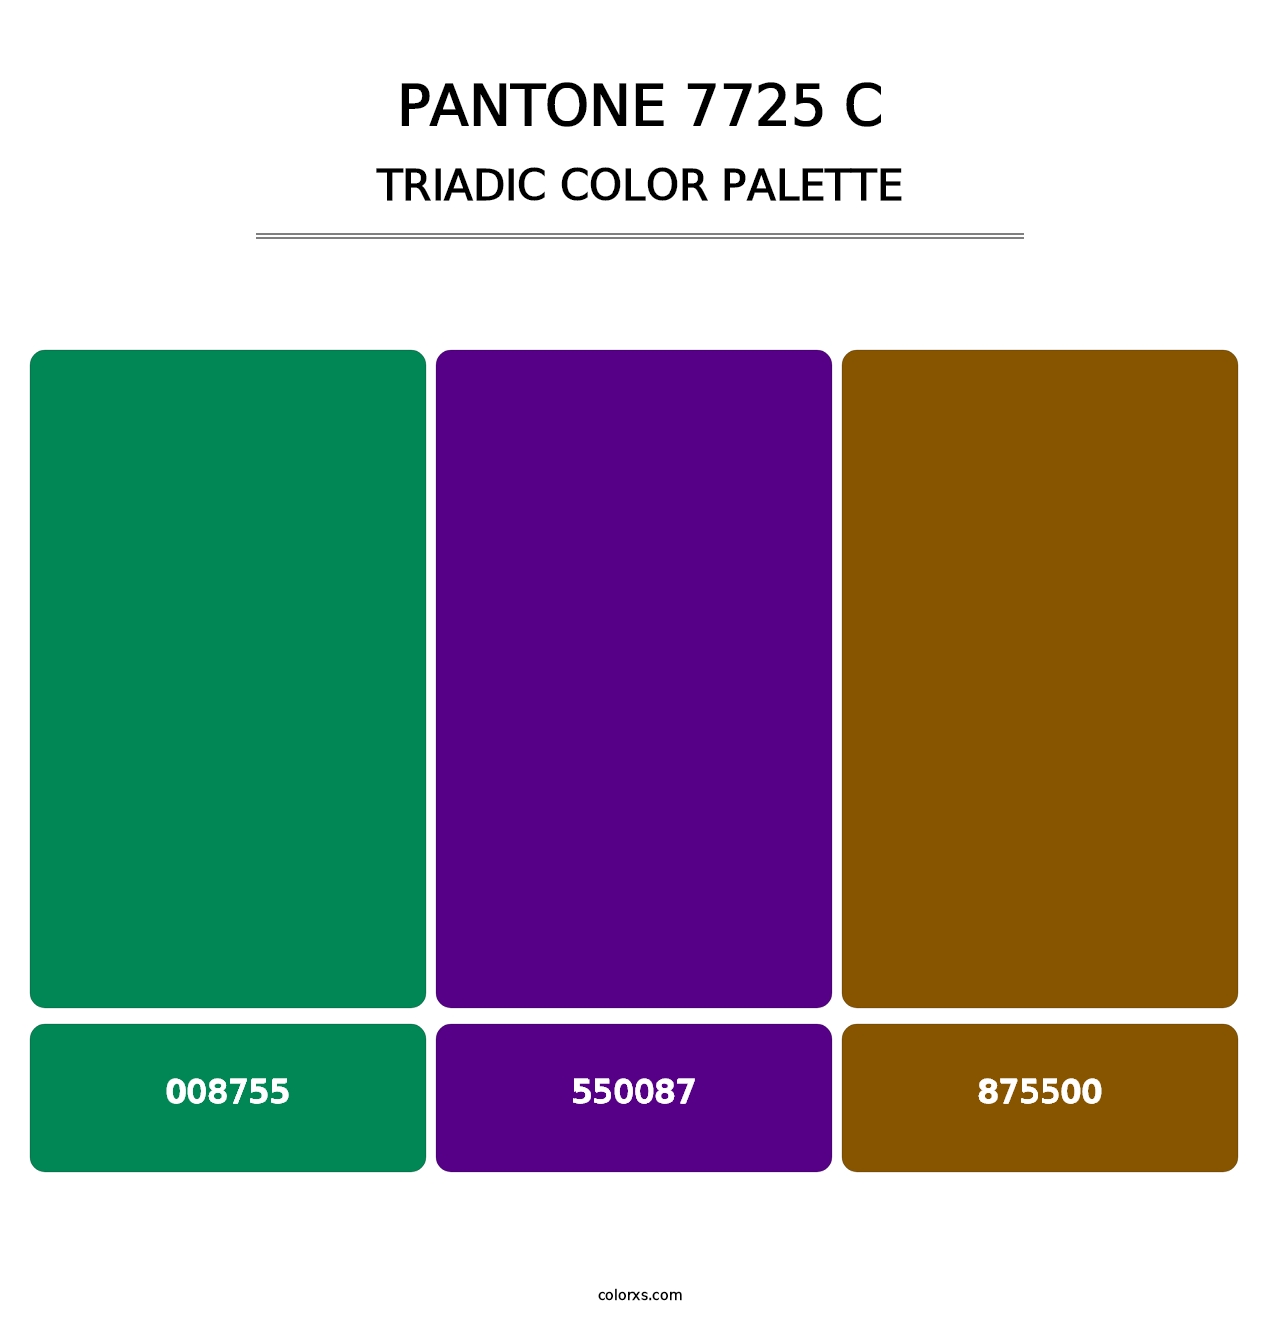 PANTONE 7725 C - Triadic Color Palette